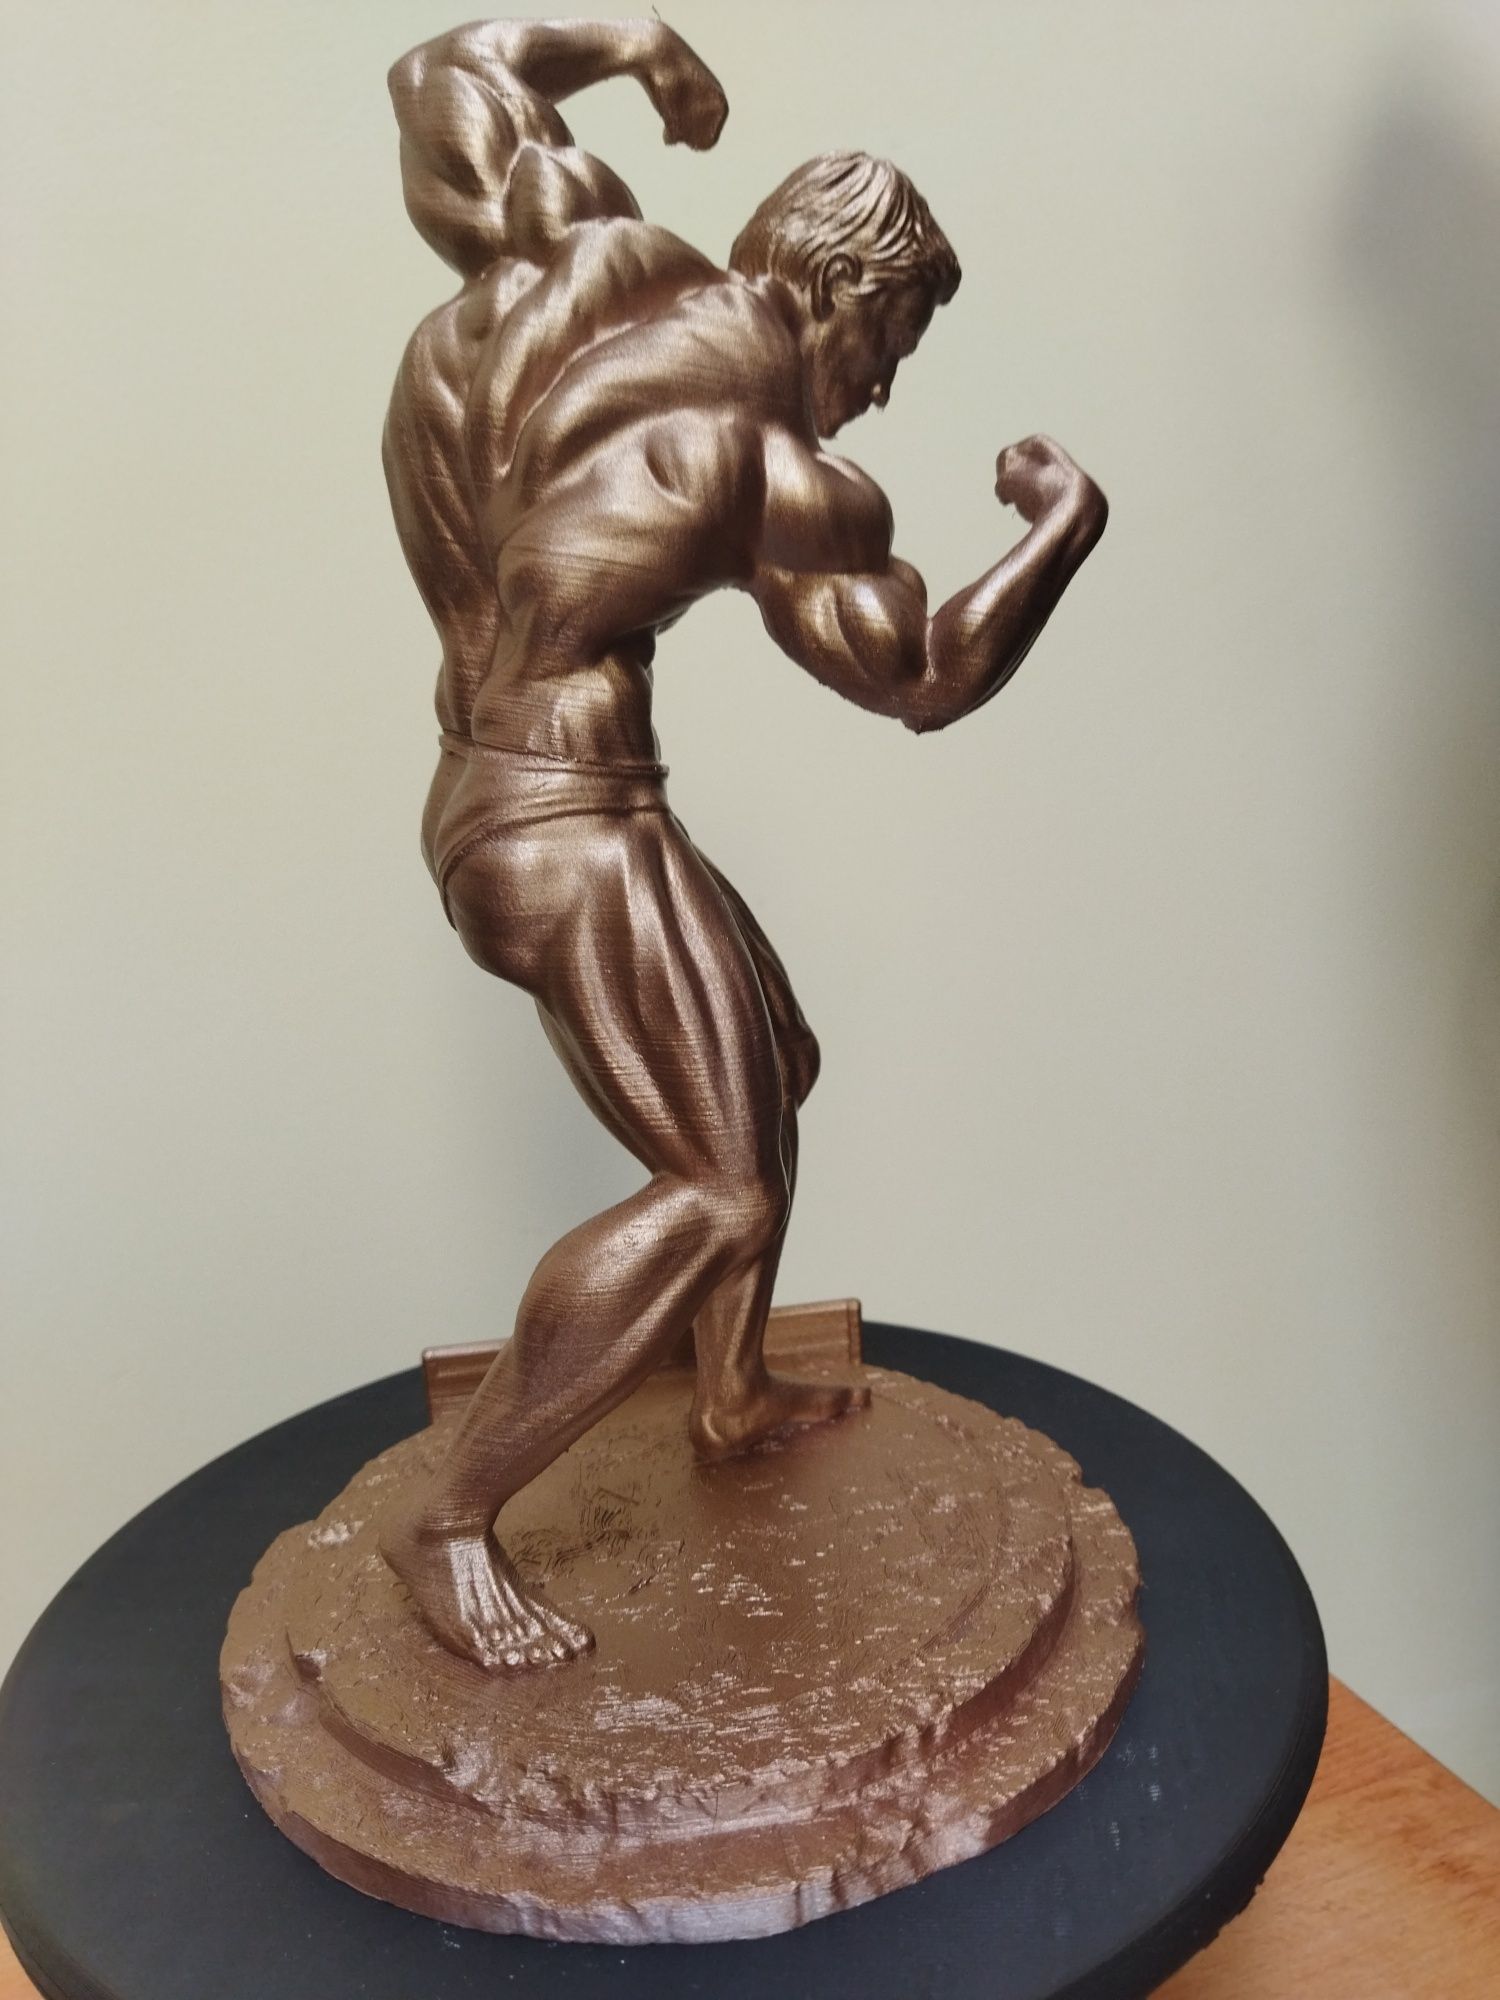 Arnold Schwarzenegger figurka pozująca 27cm kulturystyka siłownia